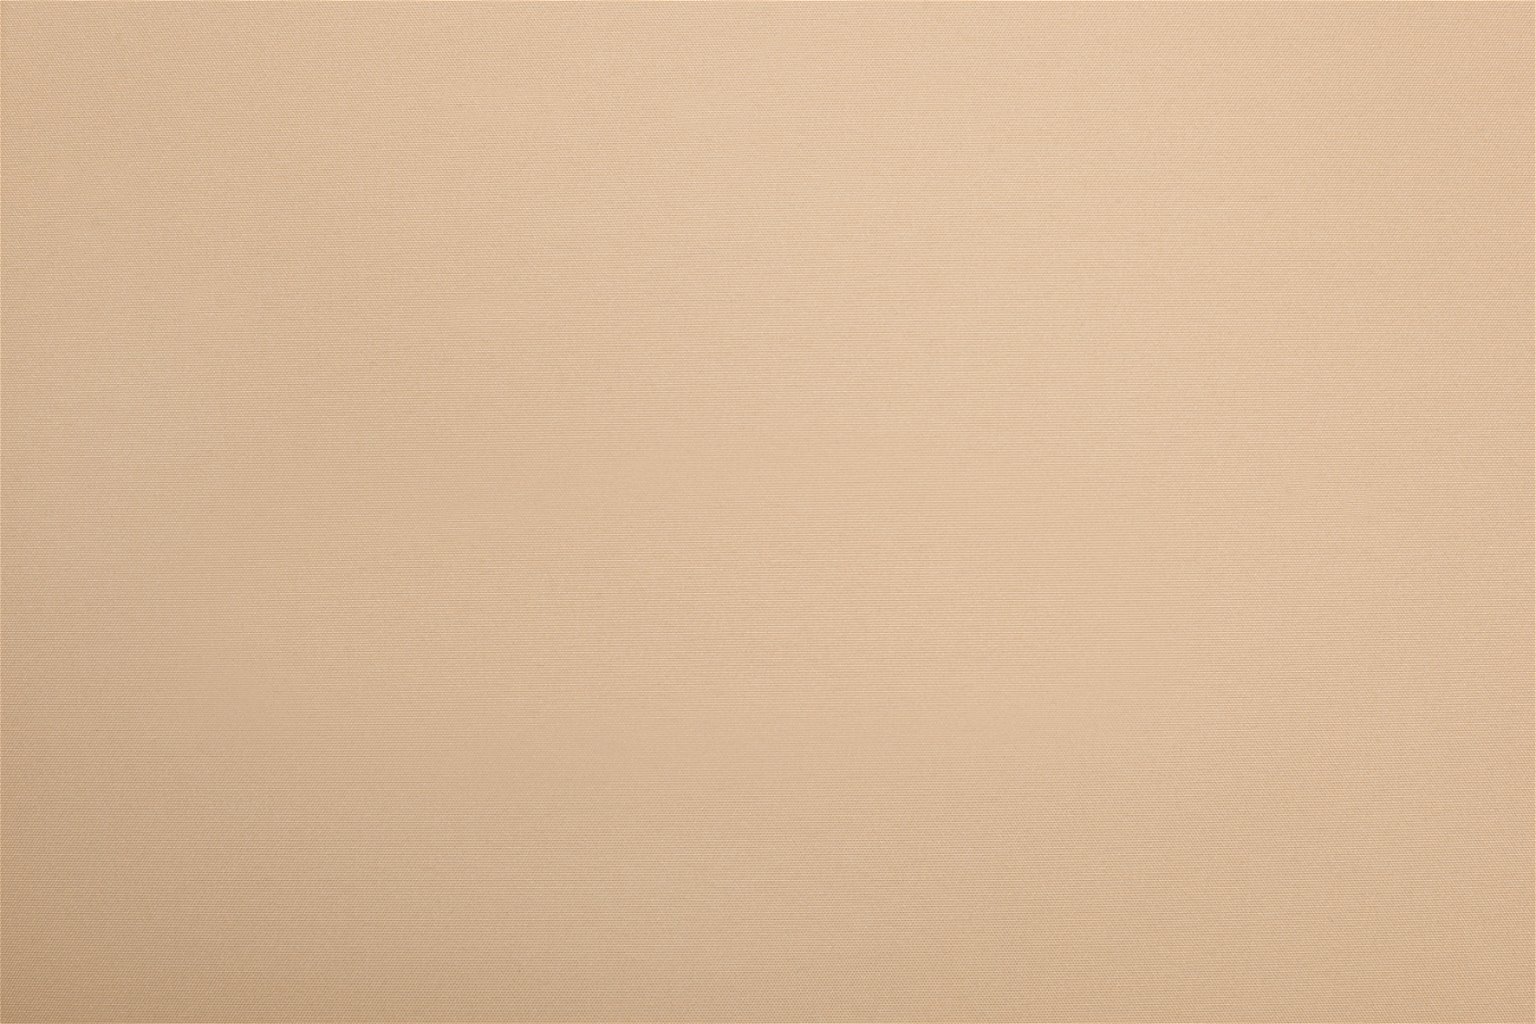 Mini ritininė užuolaida BERLIN Blackout, šv. rudos sp., 73 x 150 cm, 100 % poliesteris - 4